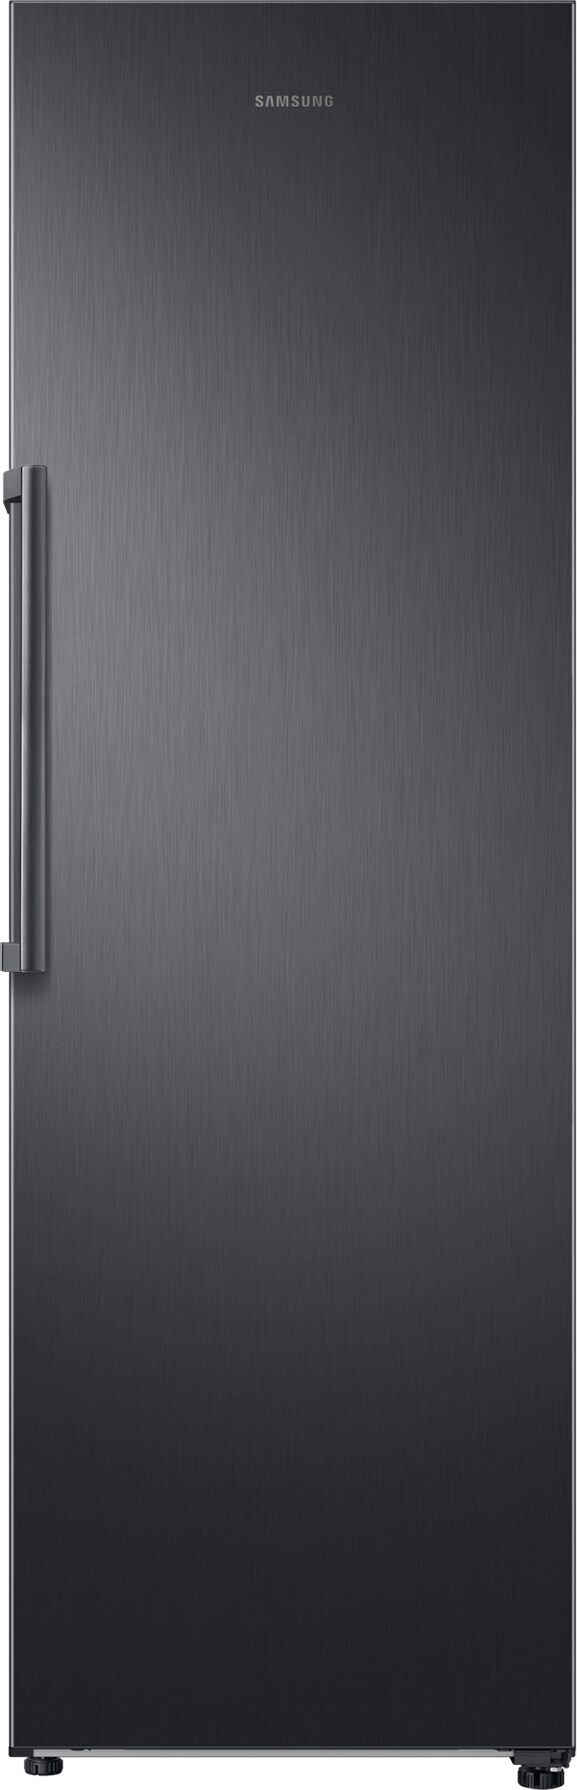 Samsung køleskab RR39M7010B1 (black stainless) med PrisMatch